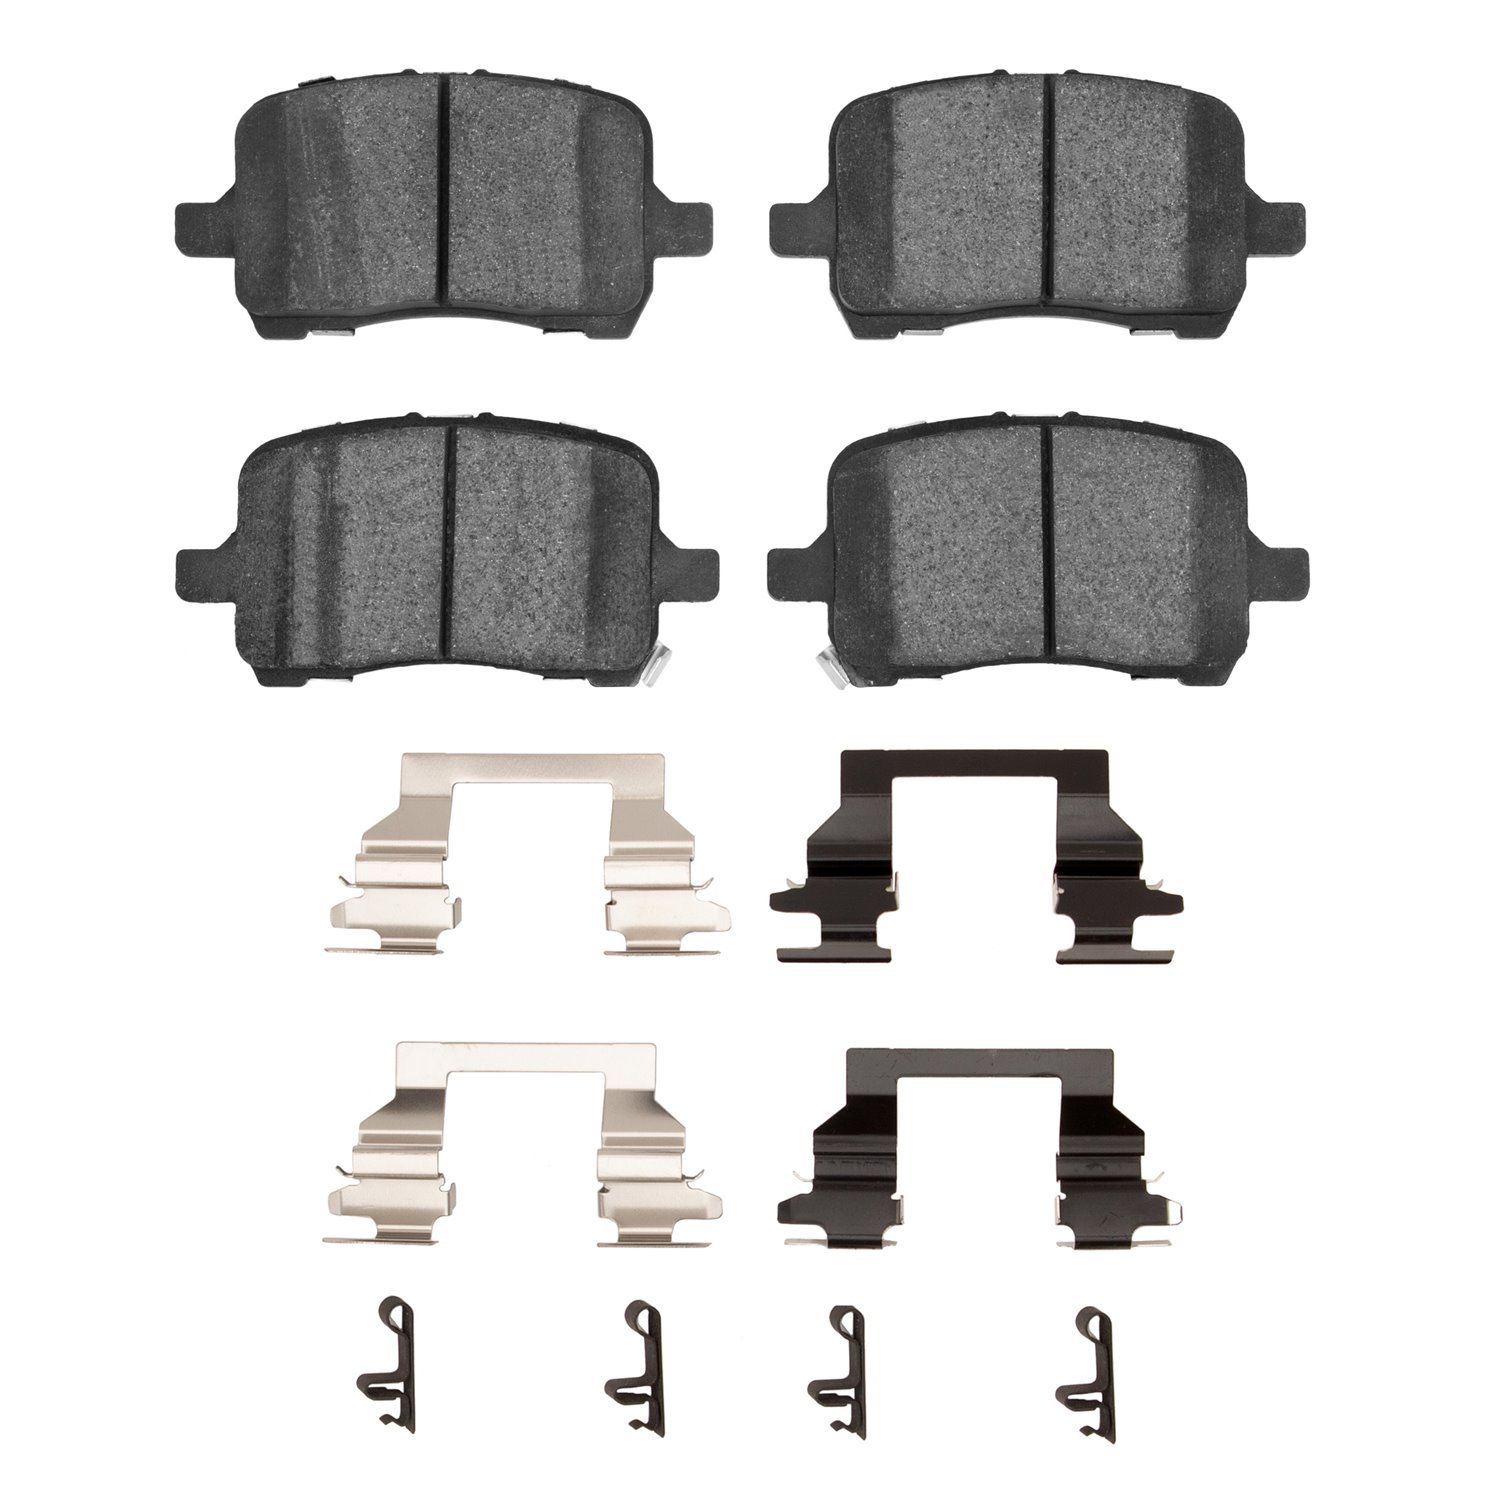 1310-1028-01 3000-Series Ceramic Brake Pads & Hardware Kit, 2004-2012 GM, Position: Front